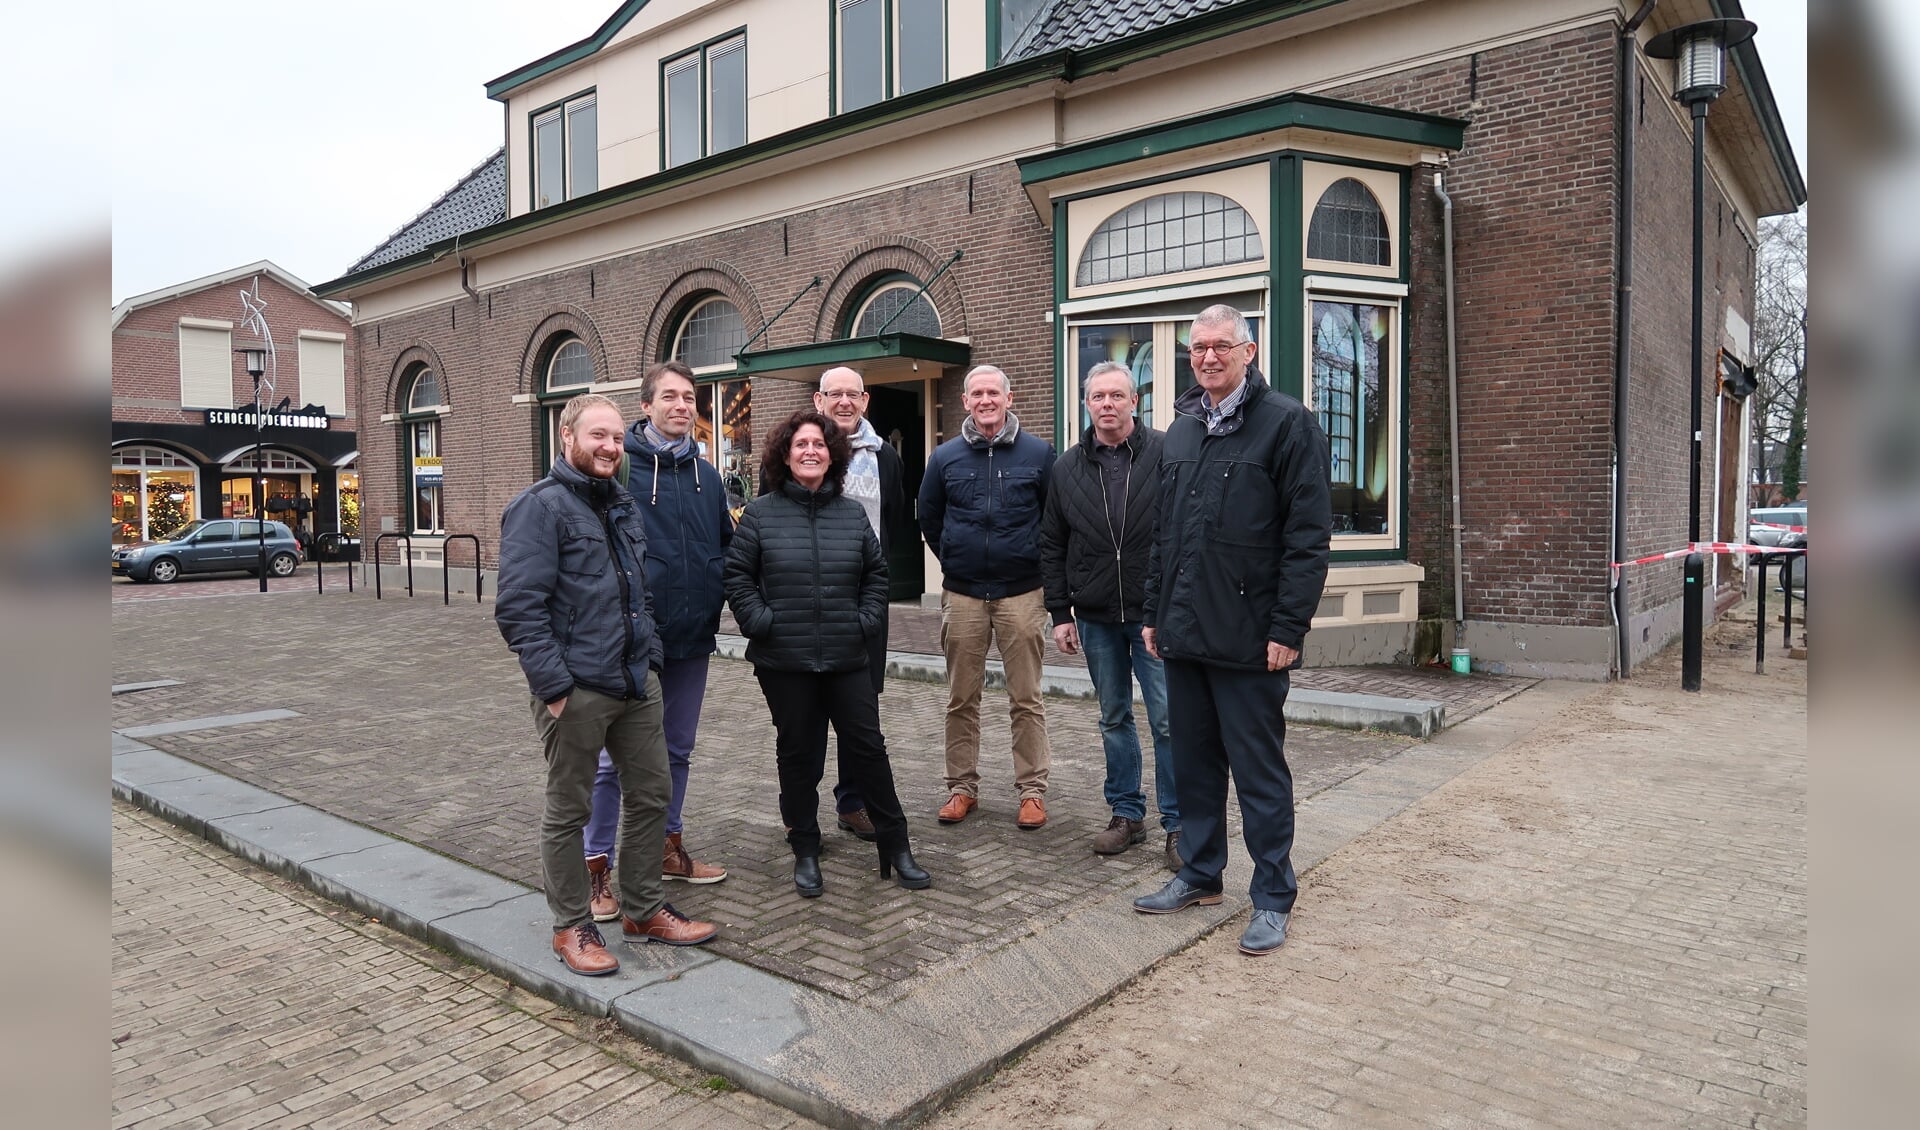  Leden van de nieuwe stichting Mien Darp Hengelo voor het oude gemeentehuis. Meest rechts voorzitter Tonnie Bergervoet. Foto: Luuk Stam